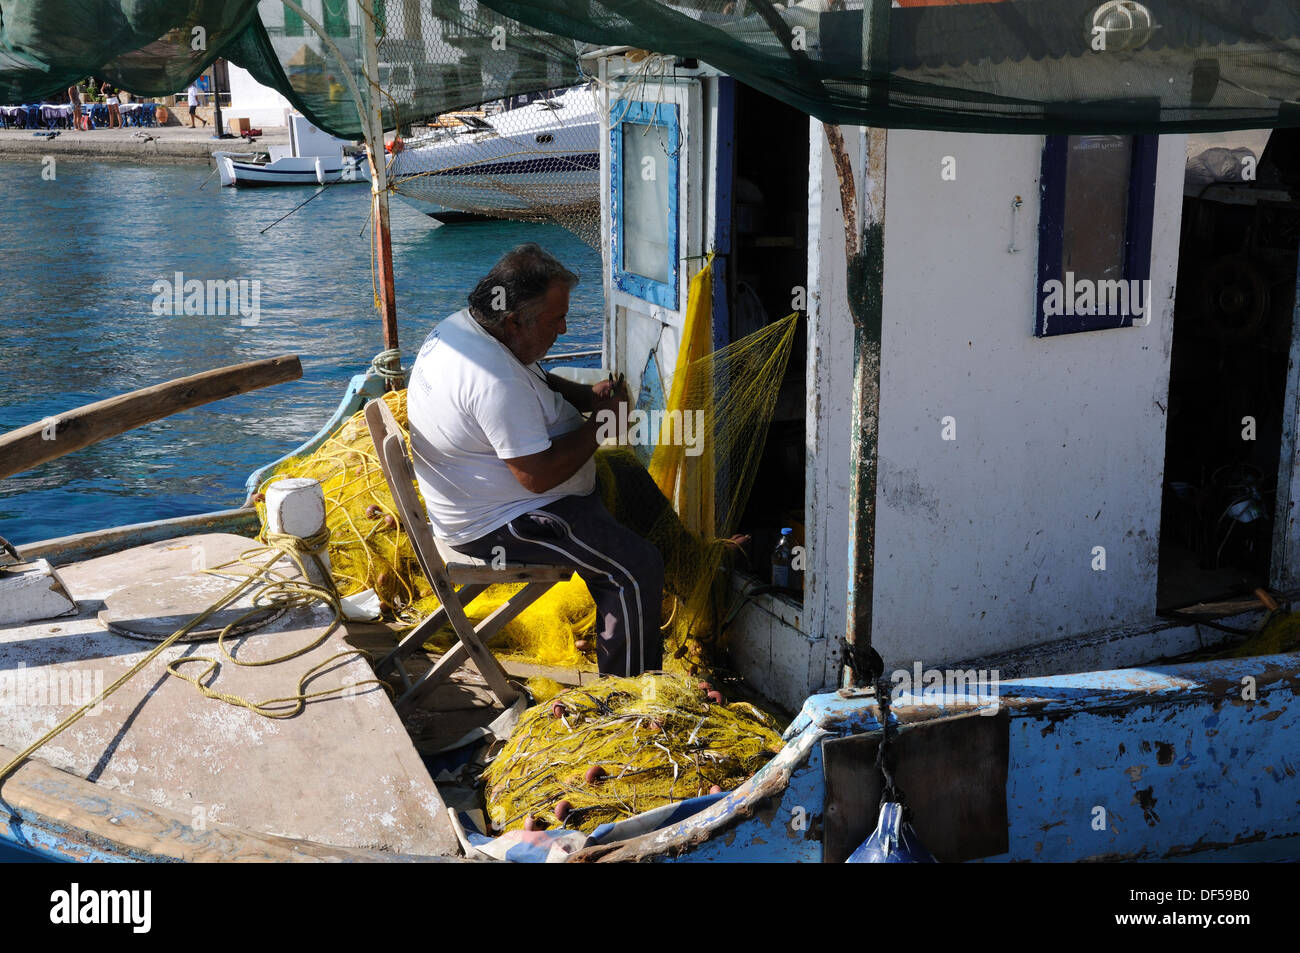 Assis dans son bateau pêcheur réparant les filets de pêche Port Port Halki Chalki Grèce Banque D'Images